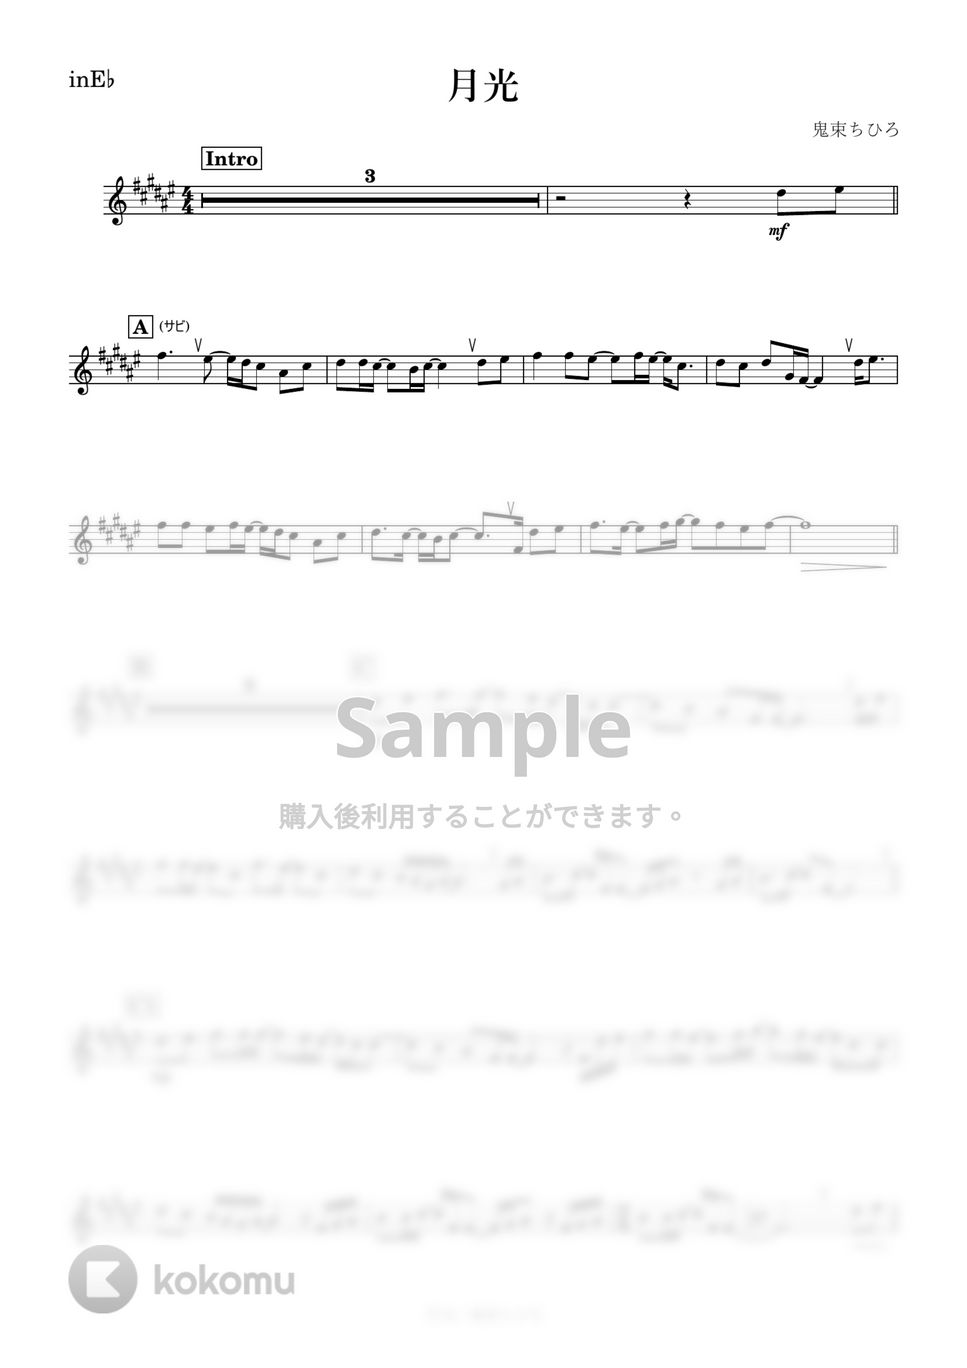 鬼束ちひろ - 月光 (E♭) by kanamusic